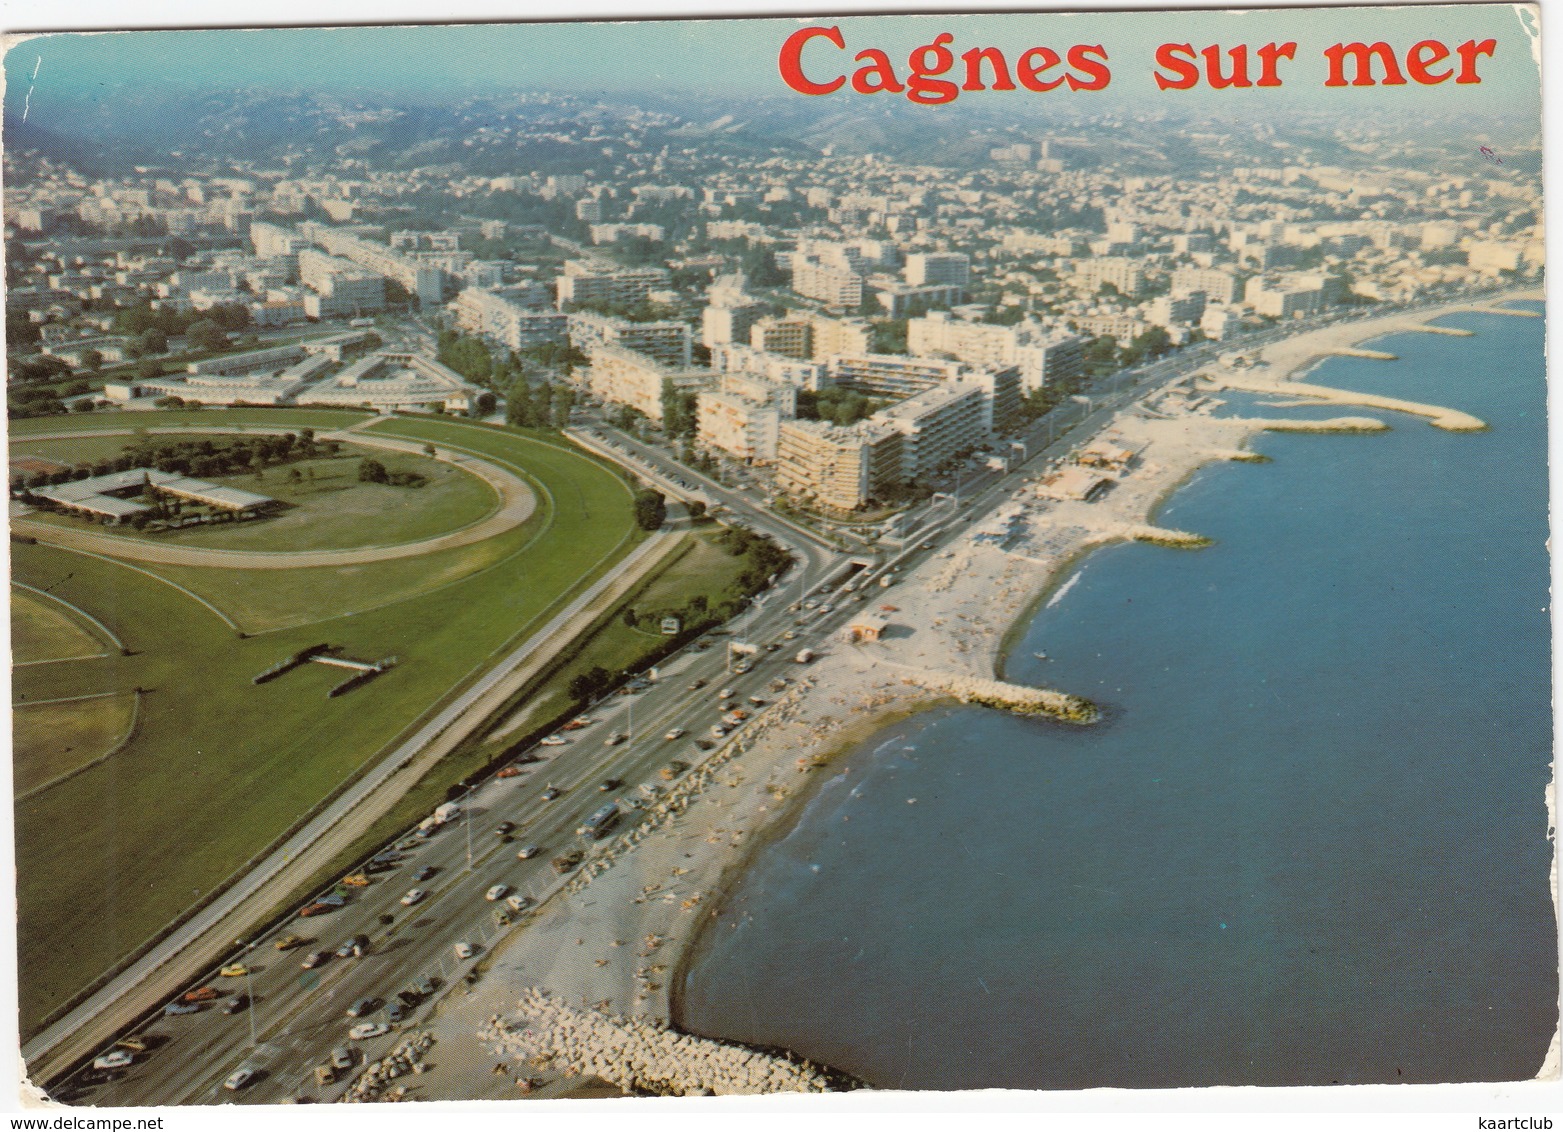 Cagnes-sur-Mer - Cros De Cagnes: VOITURES, CARAVAN, AUTOBUS - Vue Aérienne - Bd De La Plage - (France) - Passenger Cars